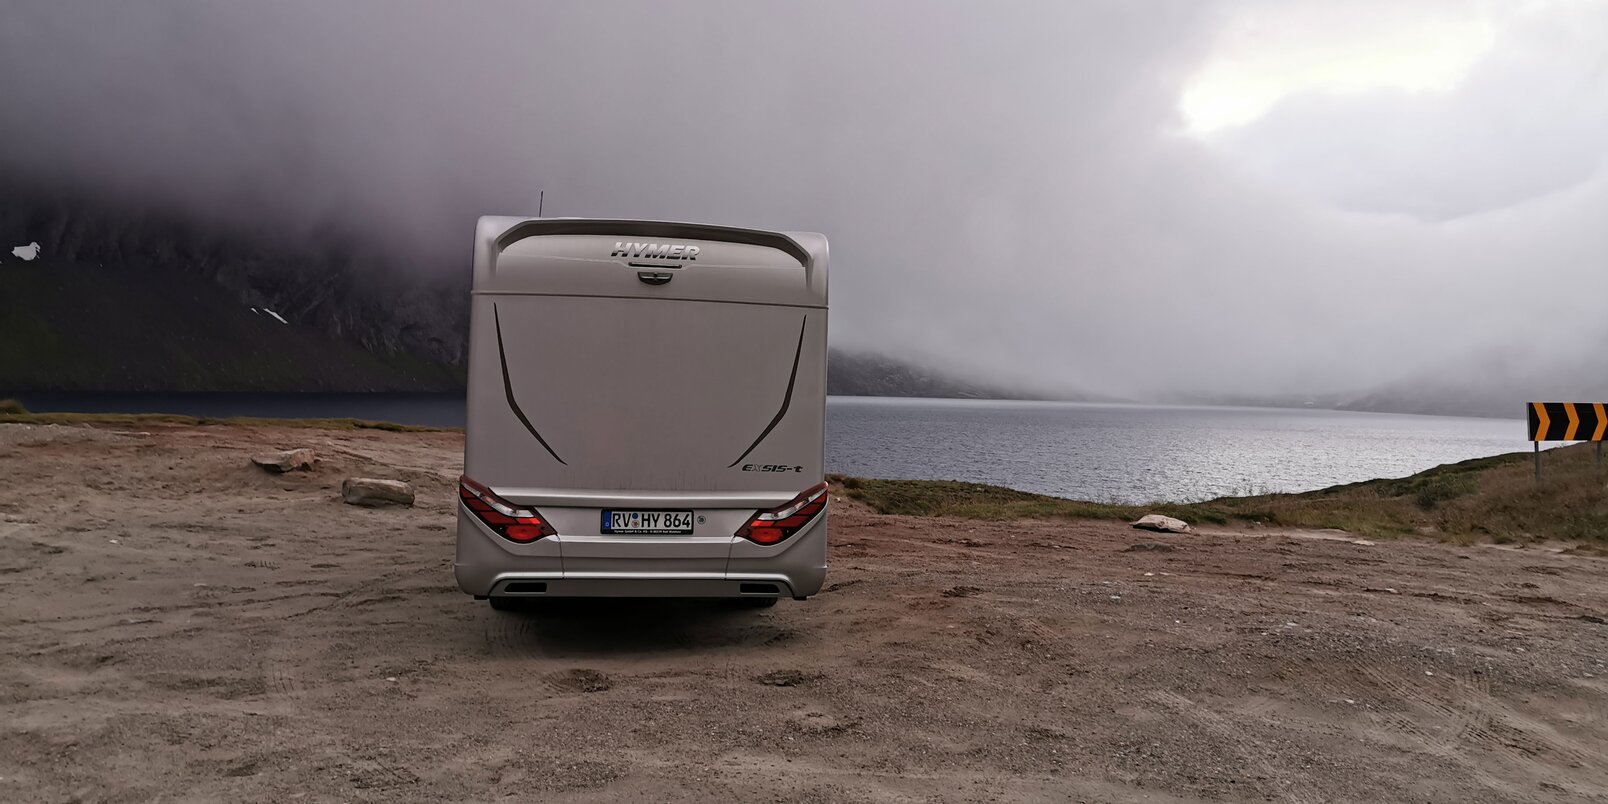 Autocaravan HYMER Exsis-t da dietro, posizionato sulla riva ghiaiosa di un fiordo nelle nuvole